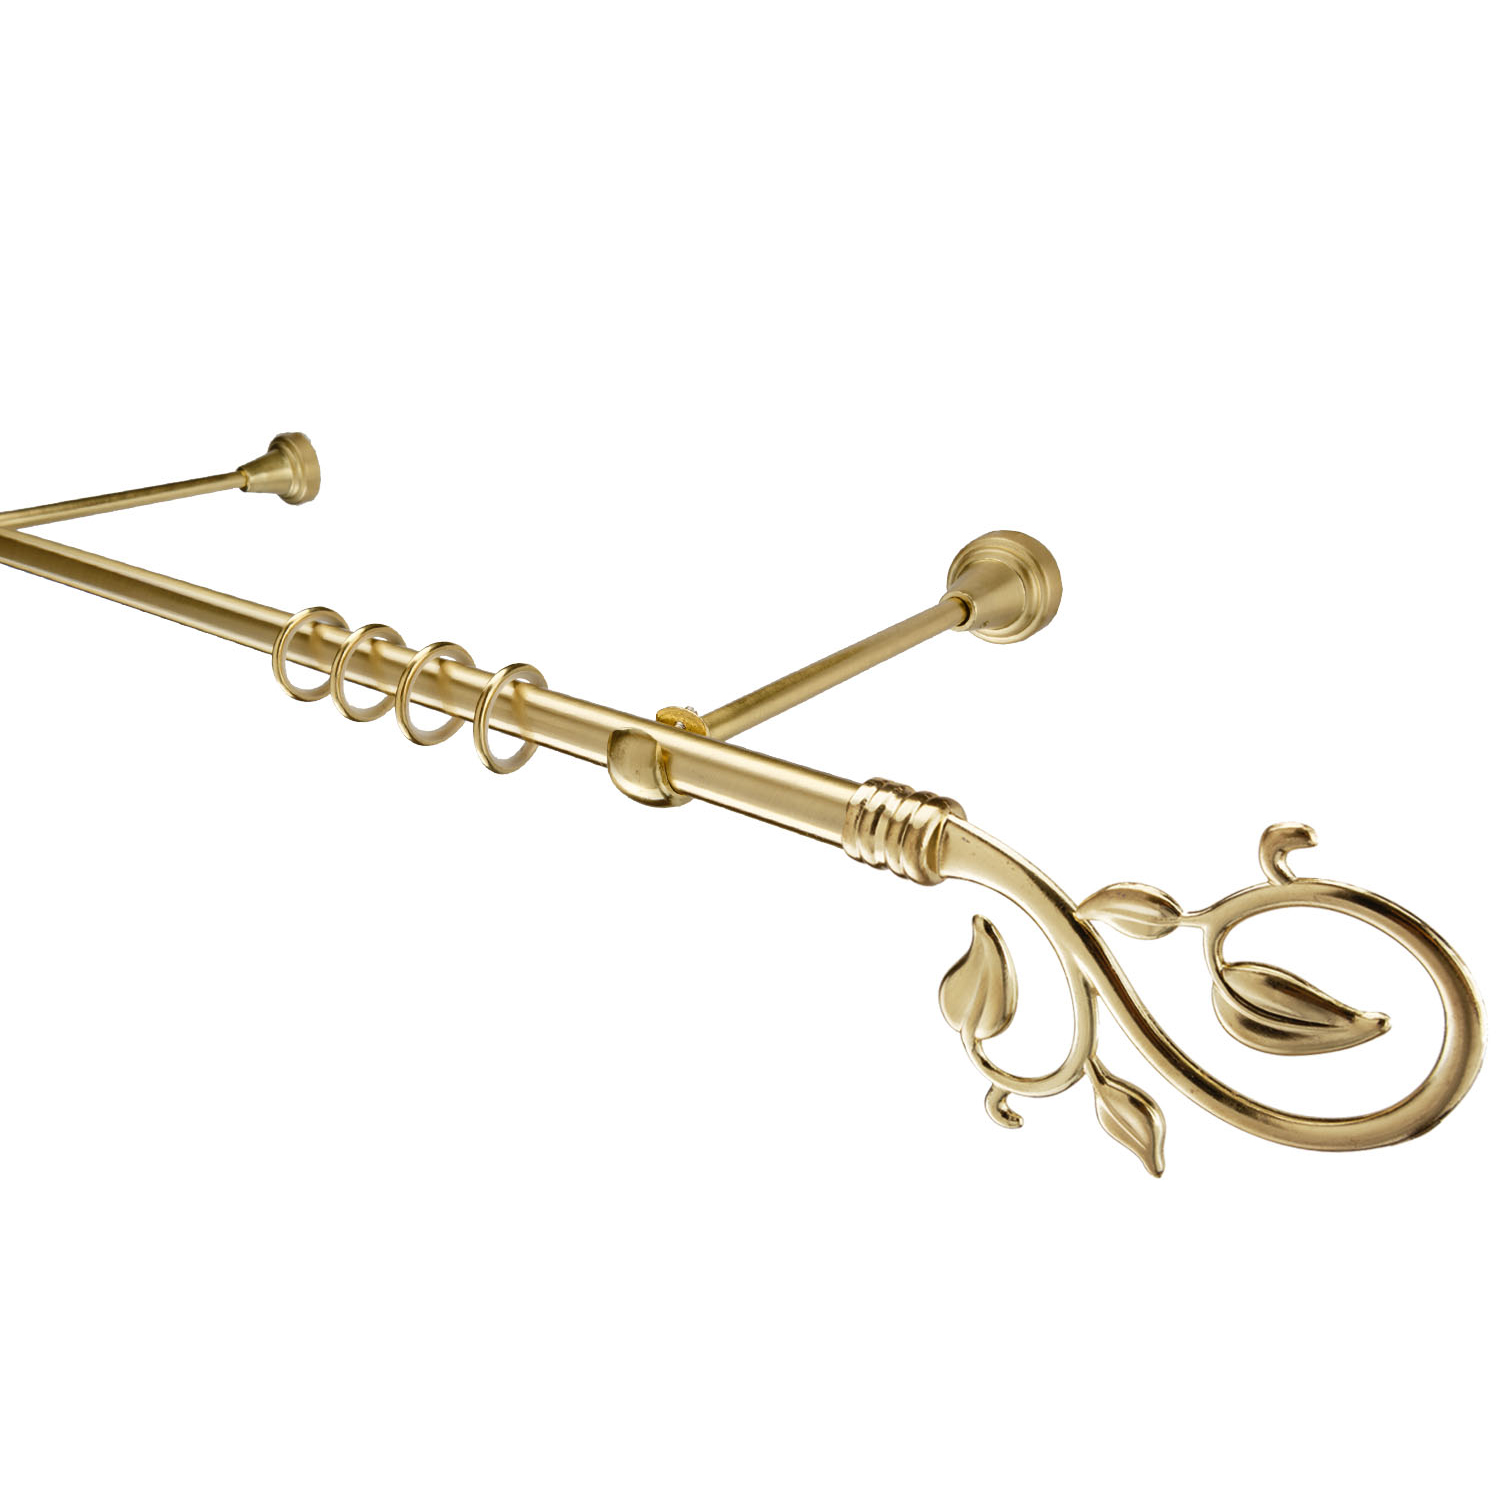 Металлический карниз для штор Амели, однорядный 16 мм, золото, гладкая штанга, длина 140 см - фото Wikidecor.ru